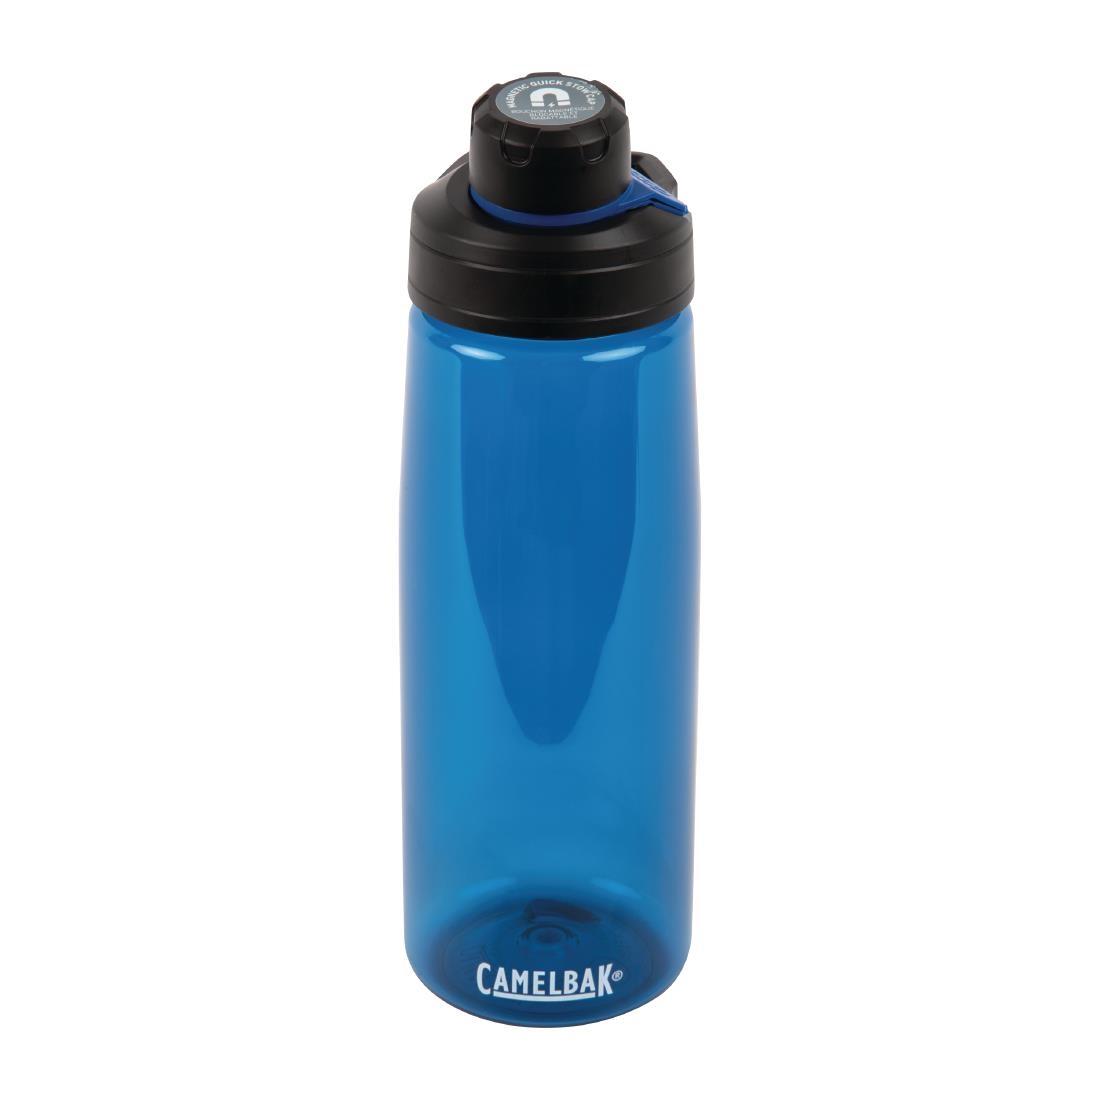 CamelBak Chute Mag Reusable Water Bottle Oxford Blue 750ml / 26oz